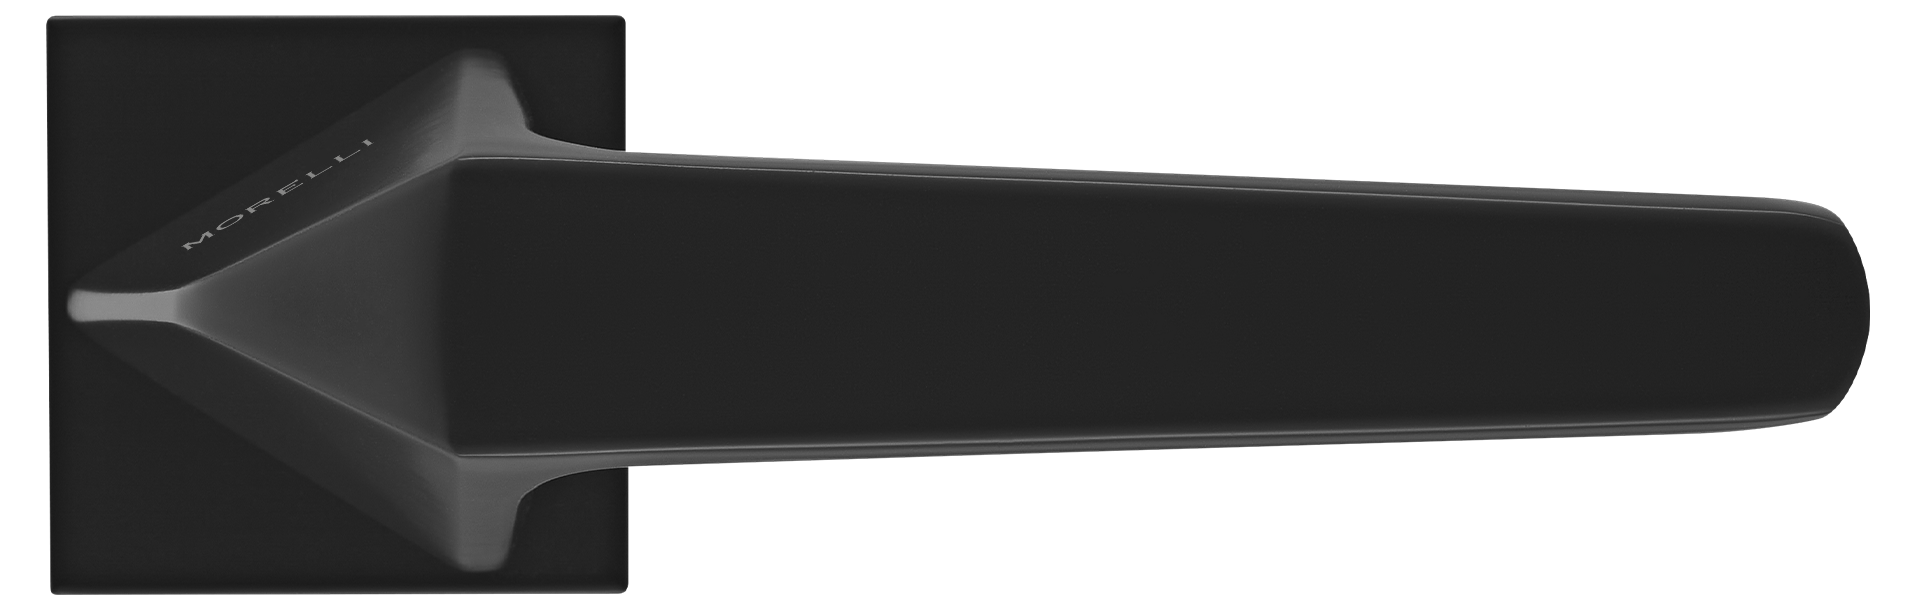 SOUK ручка дверная на квадратной розетке 6 мм, MH-55-S6 BL, цвет - черный фото купить в Махачкале